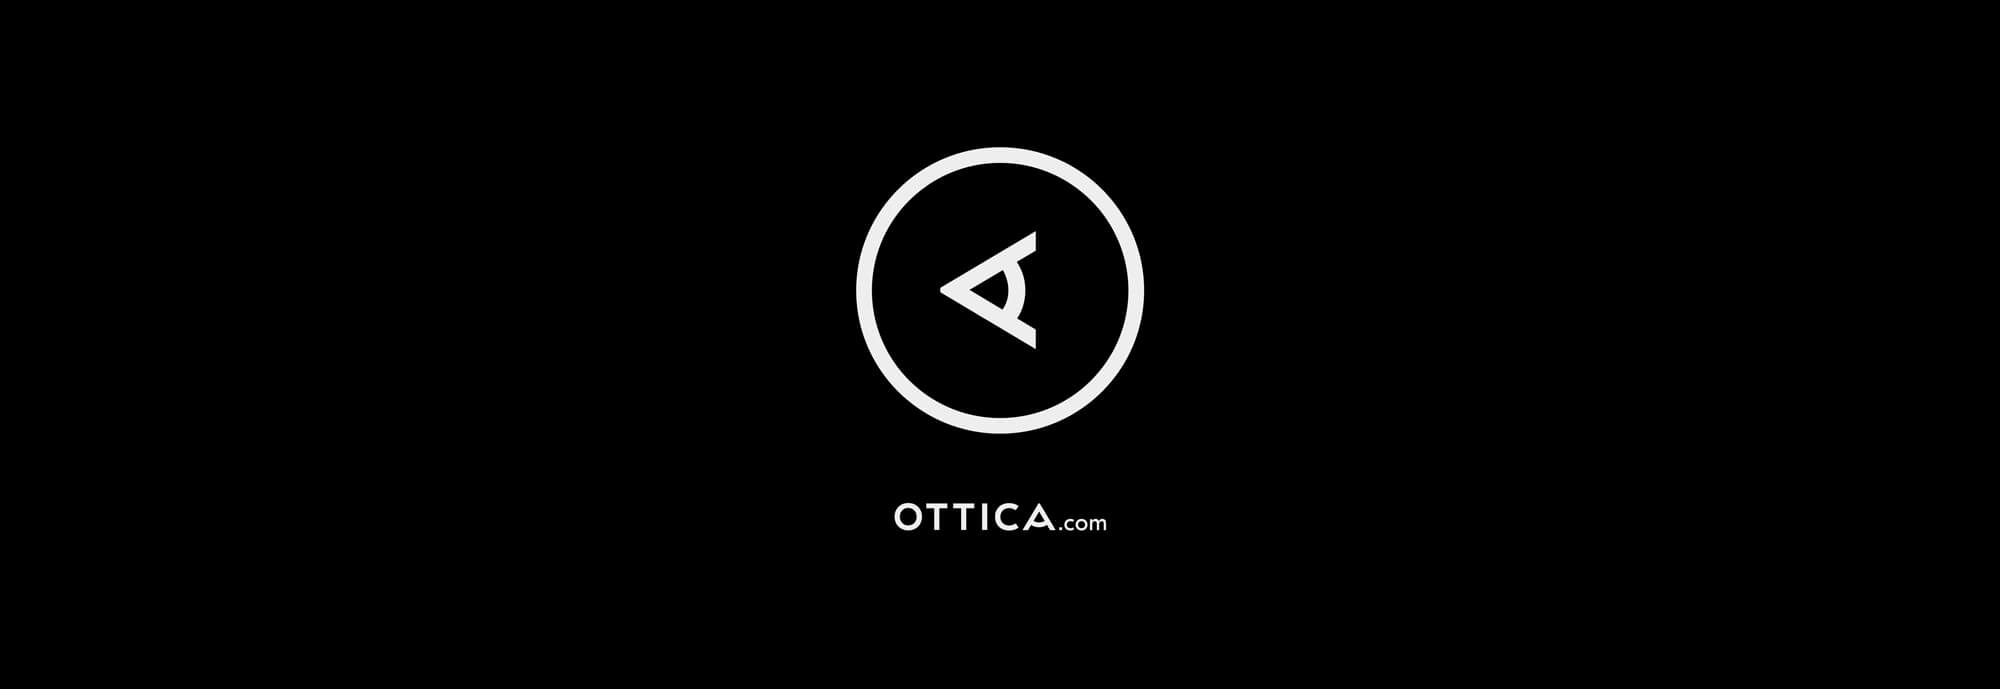 Ottica.com